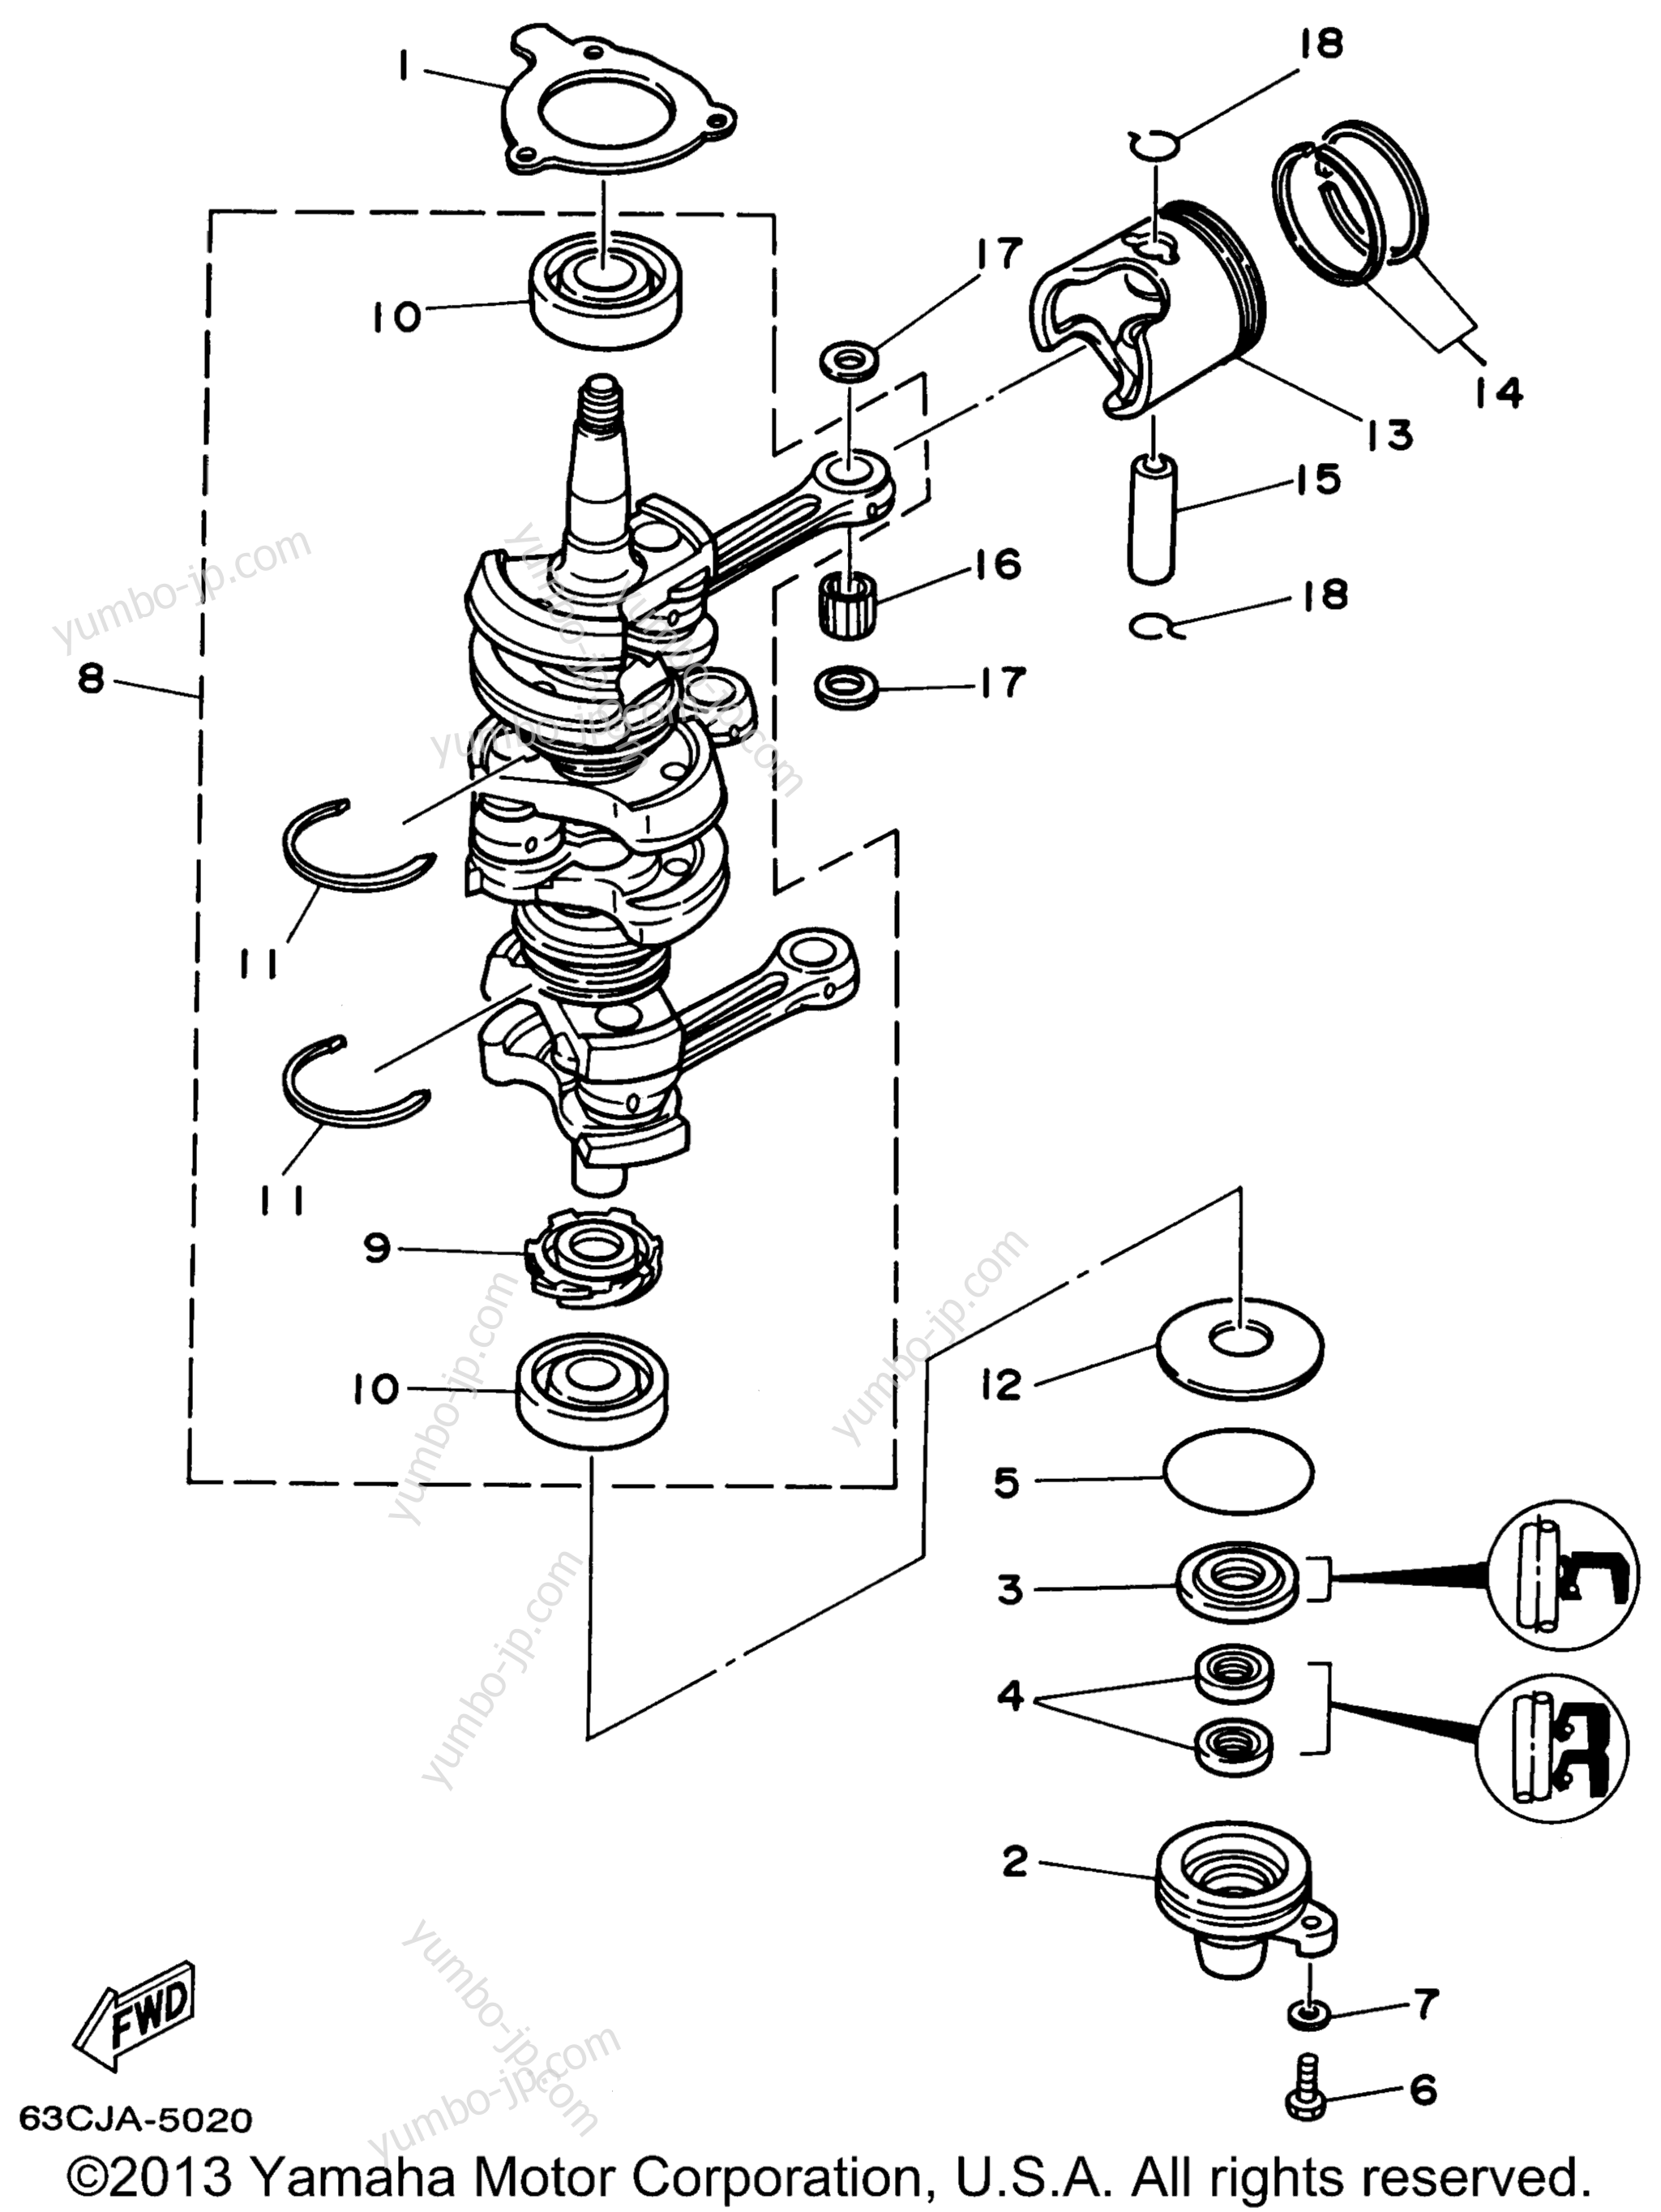 Коленвал и поршневая группа для лодочных моторов YAMAHA P40EJRW_THLW (40MLHW) 1998 г.